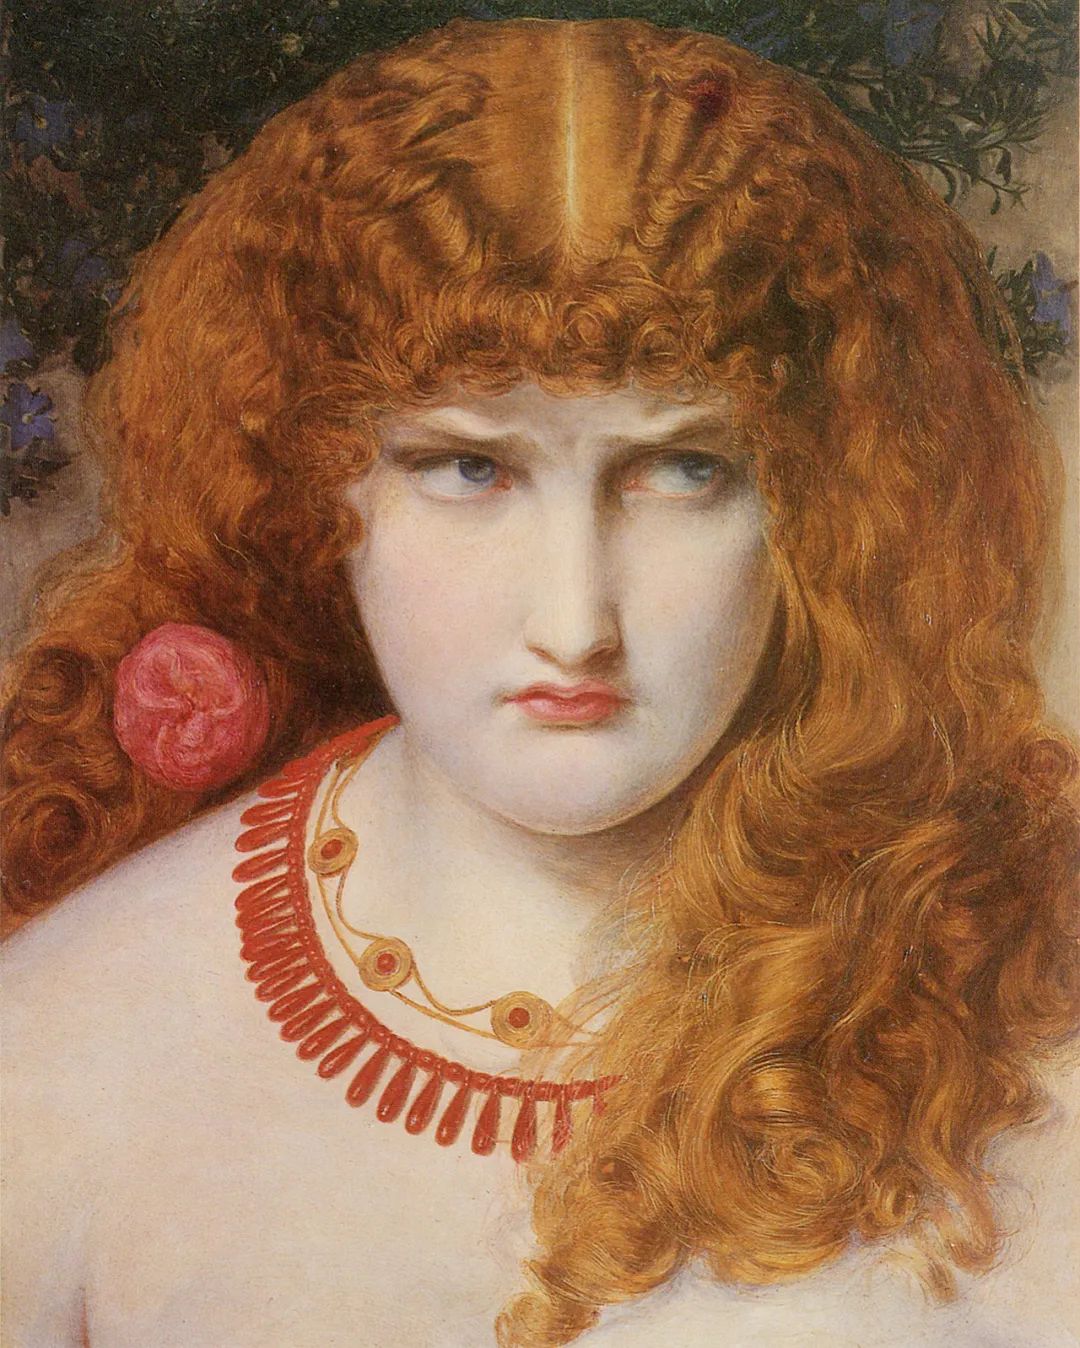 希腊神话里的美人海伦,因美貌而引起了著名的特洛伊之战